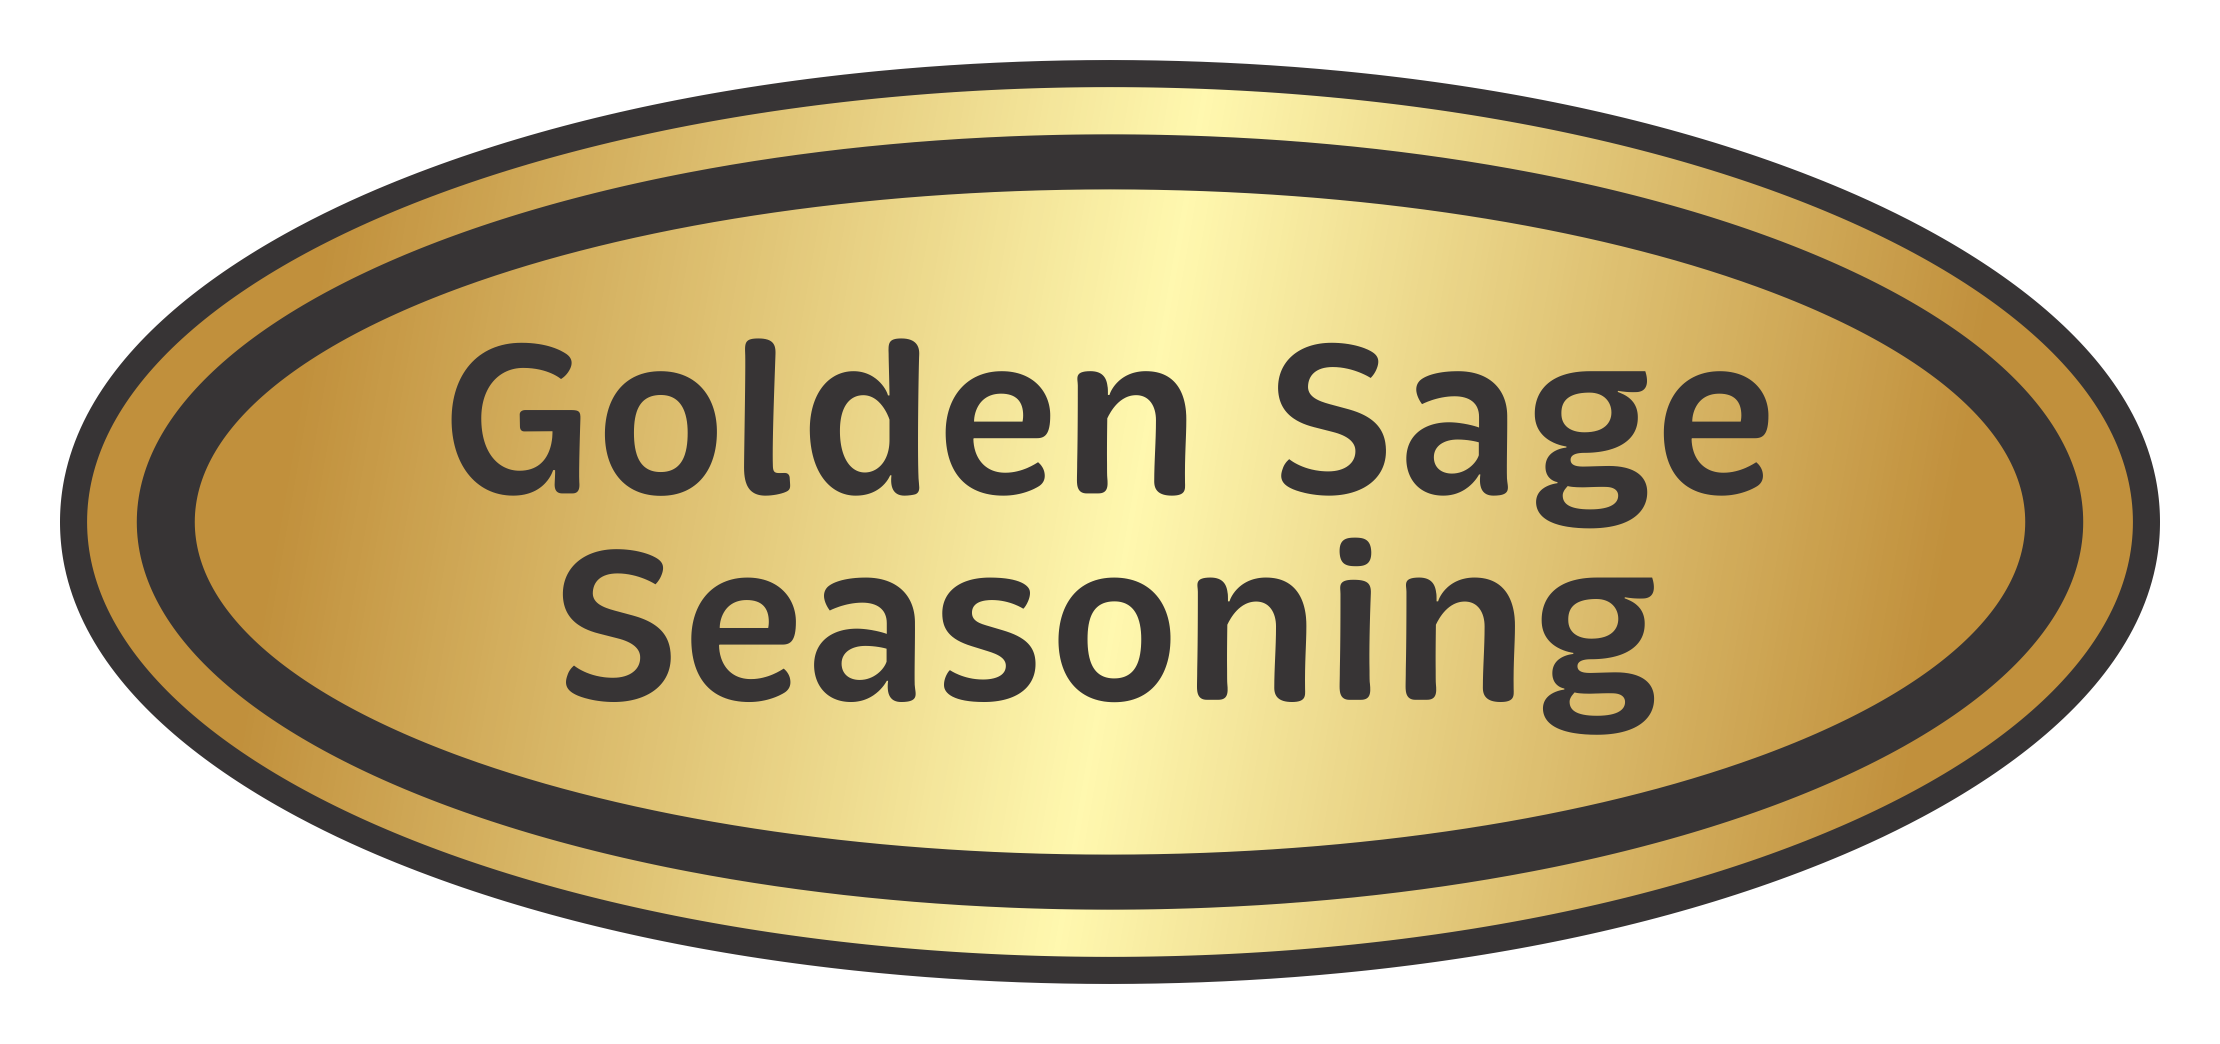 Golden Sage Seasoning